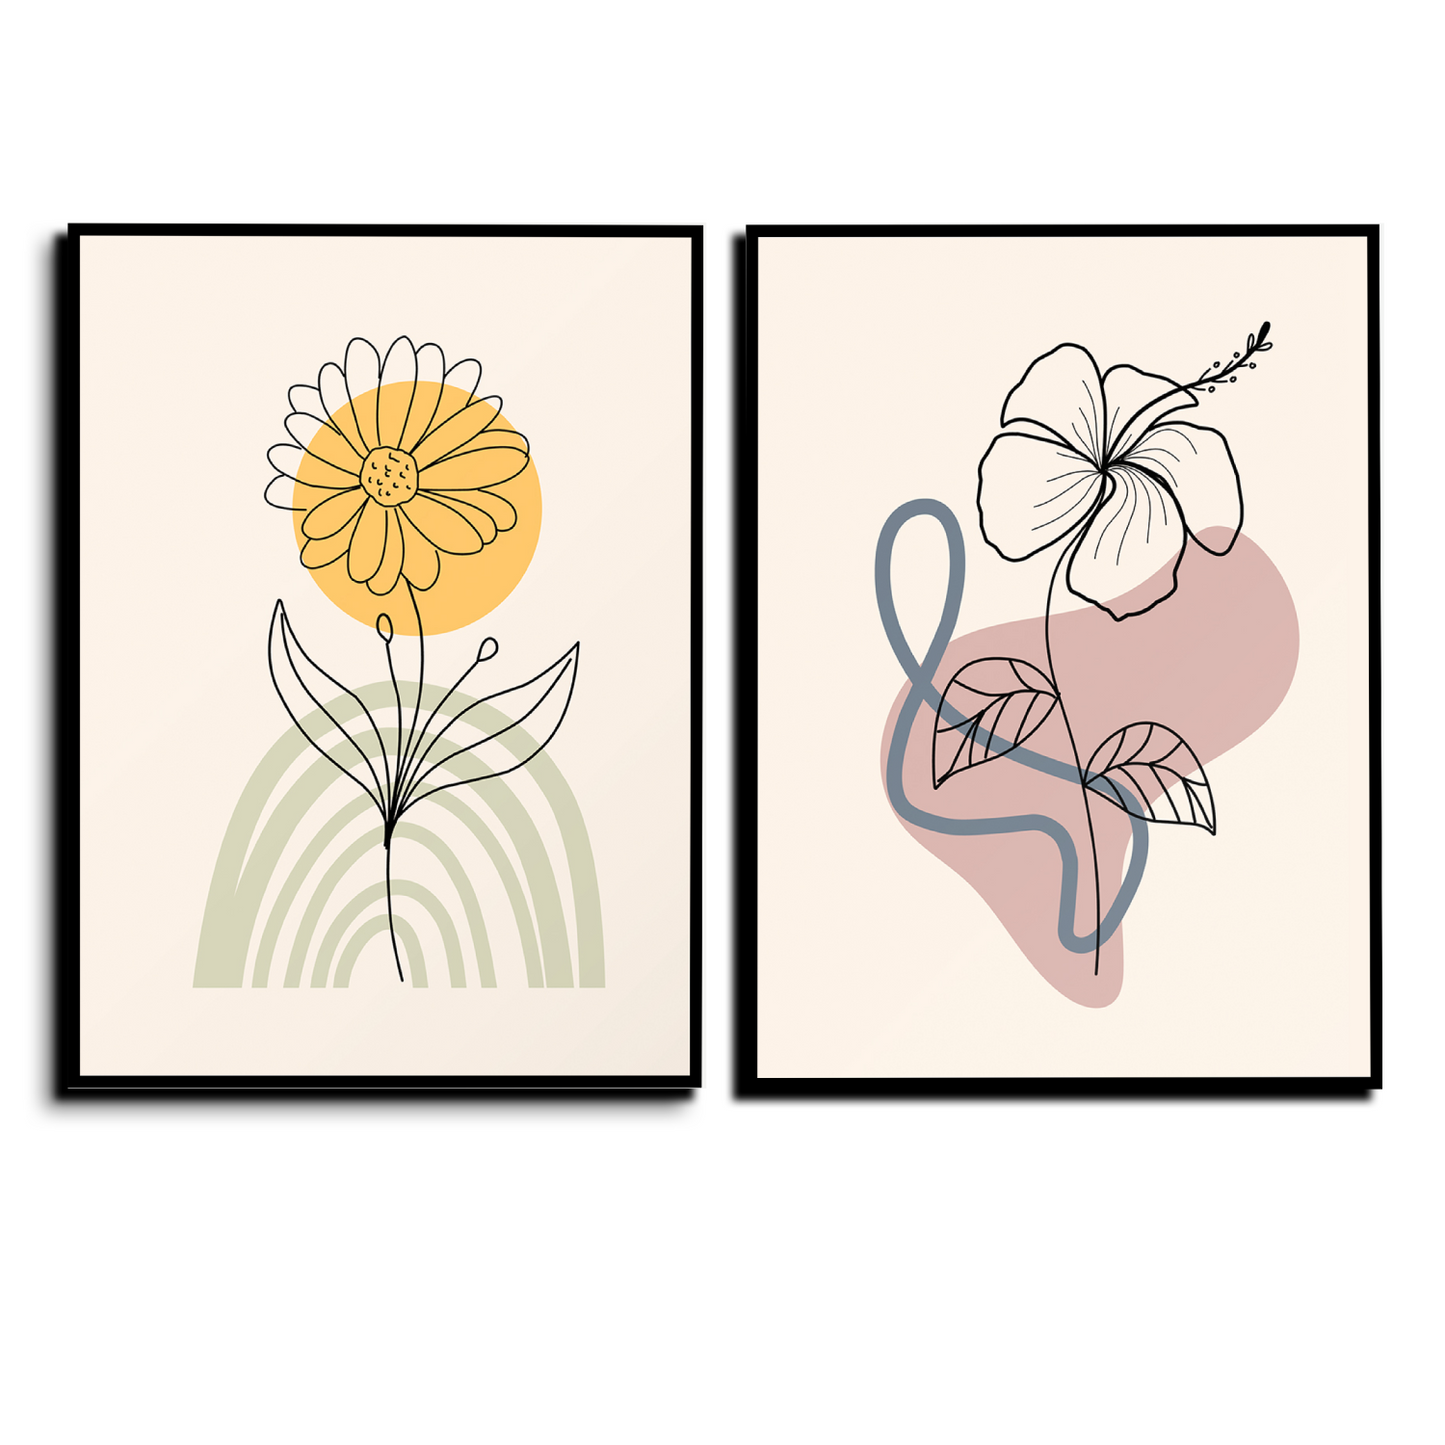 Minimalist Flower and Leaves Wood Print Wall Art Set of 2